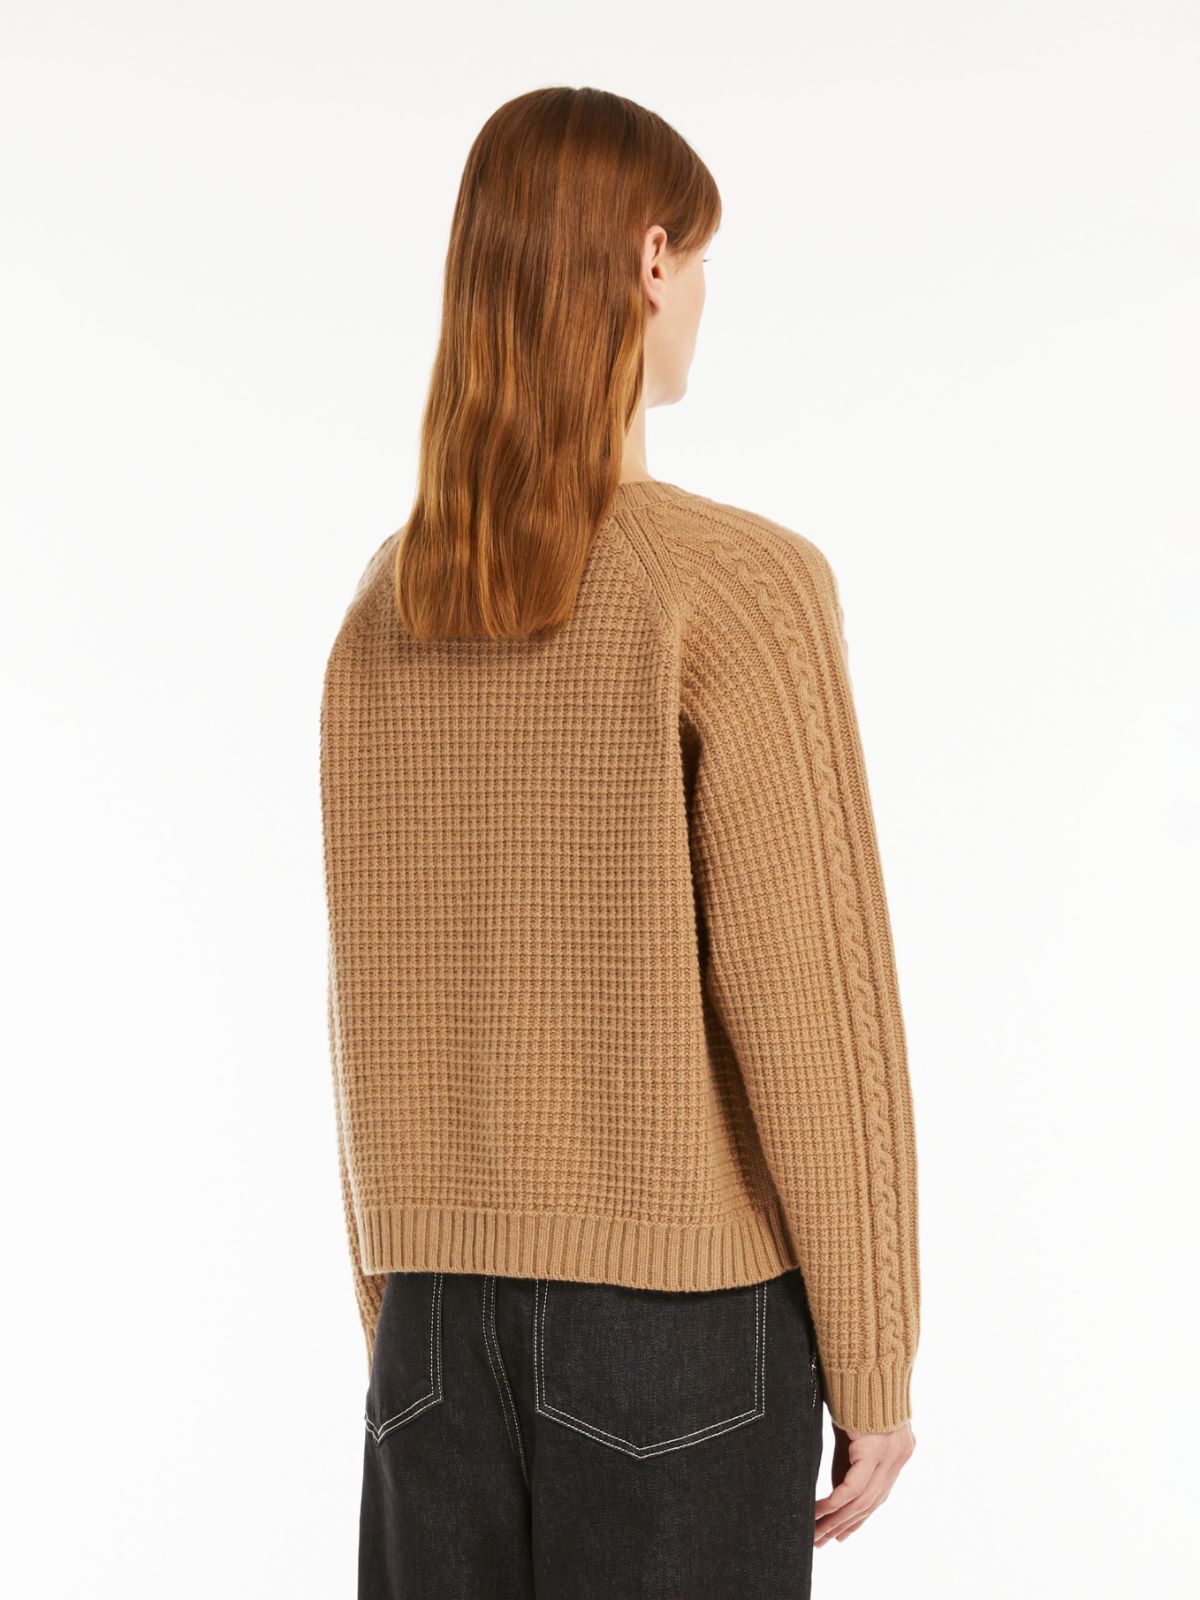 Wool yarn sweater - CAMEL - Weekend Max Mara - 3